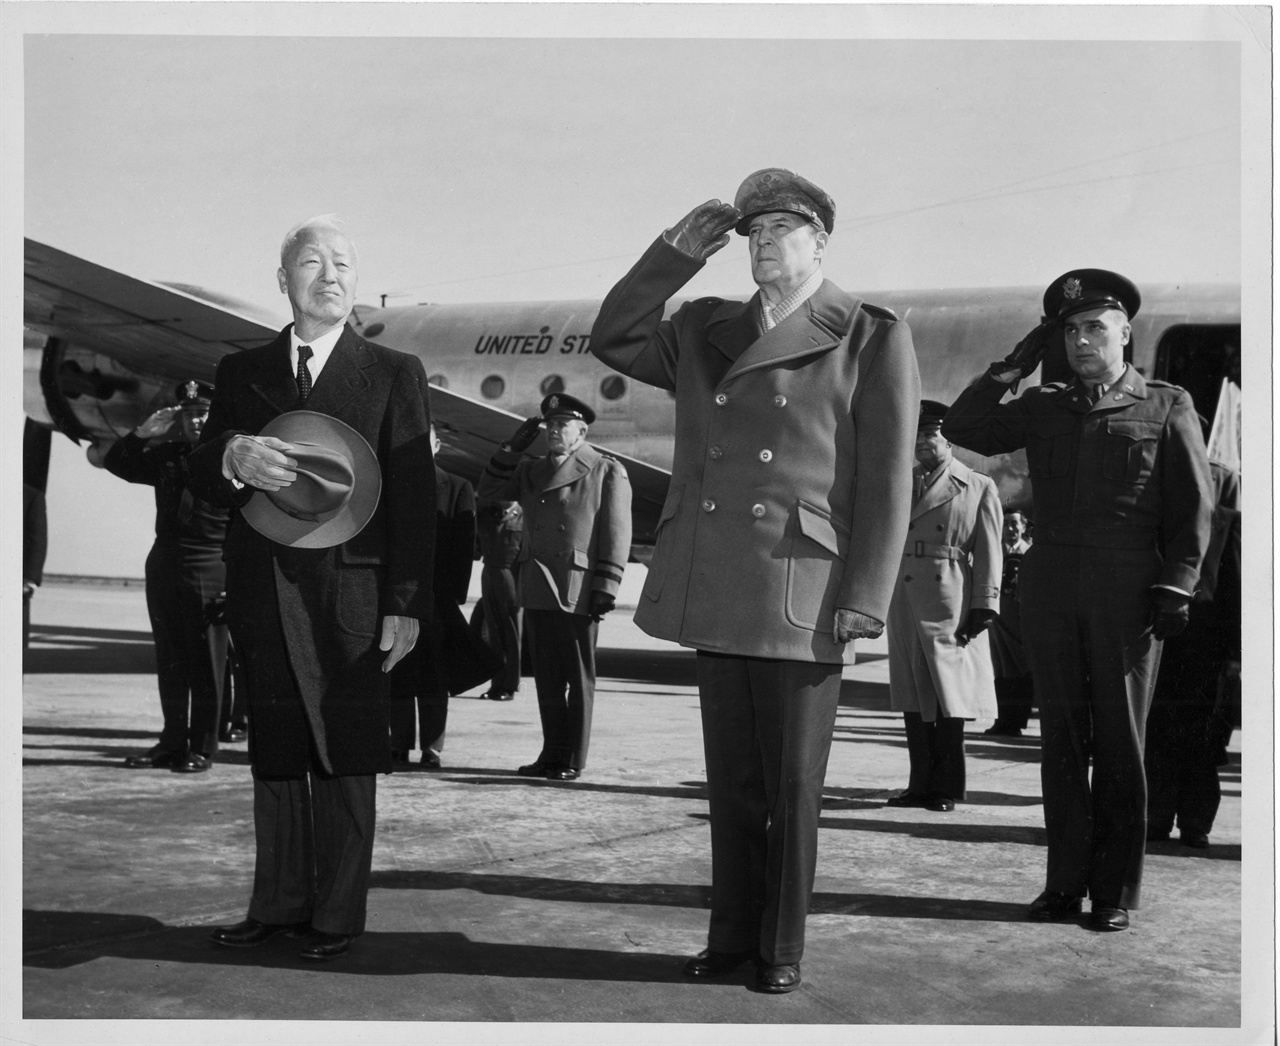 1950. 2. 18. 도쿄 하네다 공항에서 양국 국기에 경례하는 이승만 대통령과 맥아더 장군.